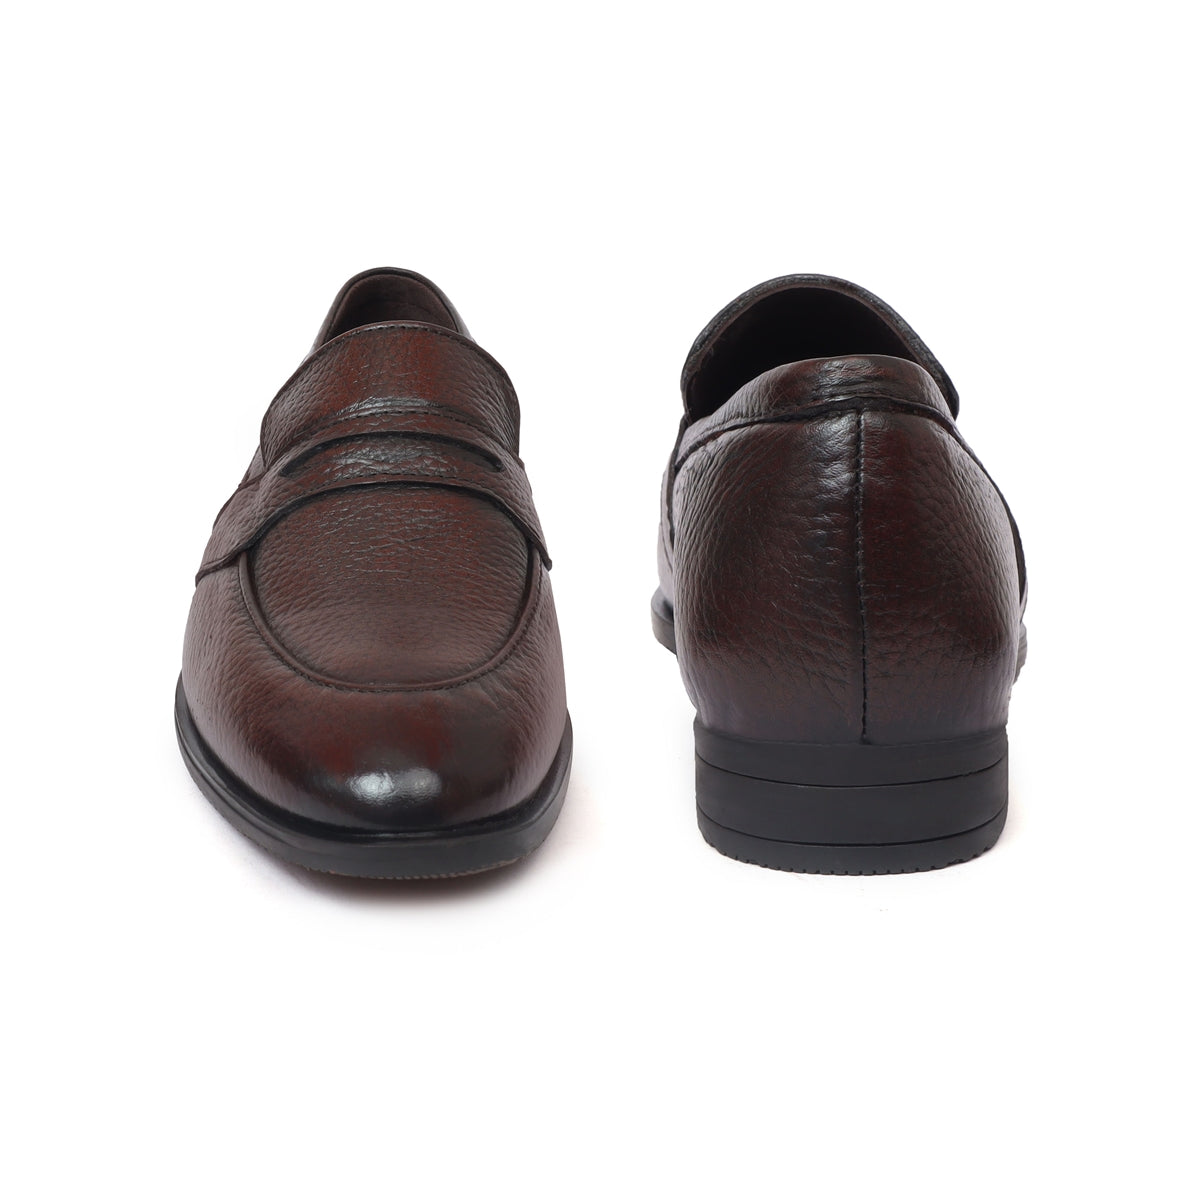 Men’s Formal Slip on Shoes BL-33_brown2